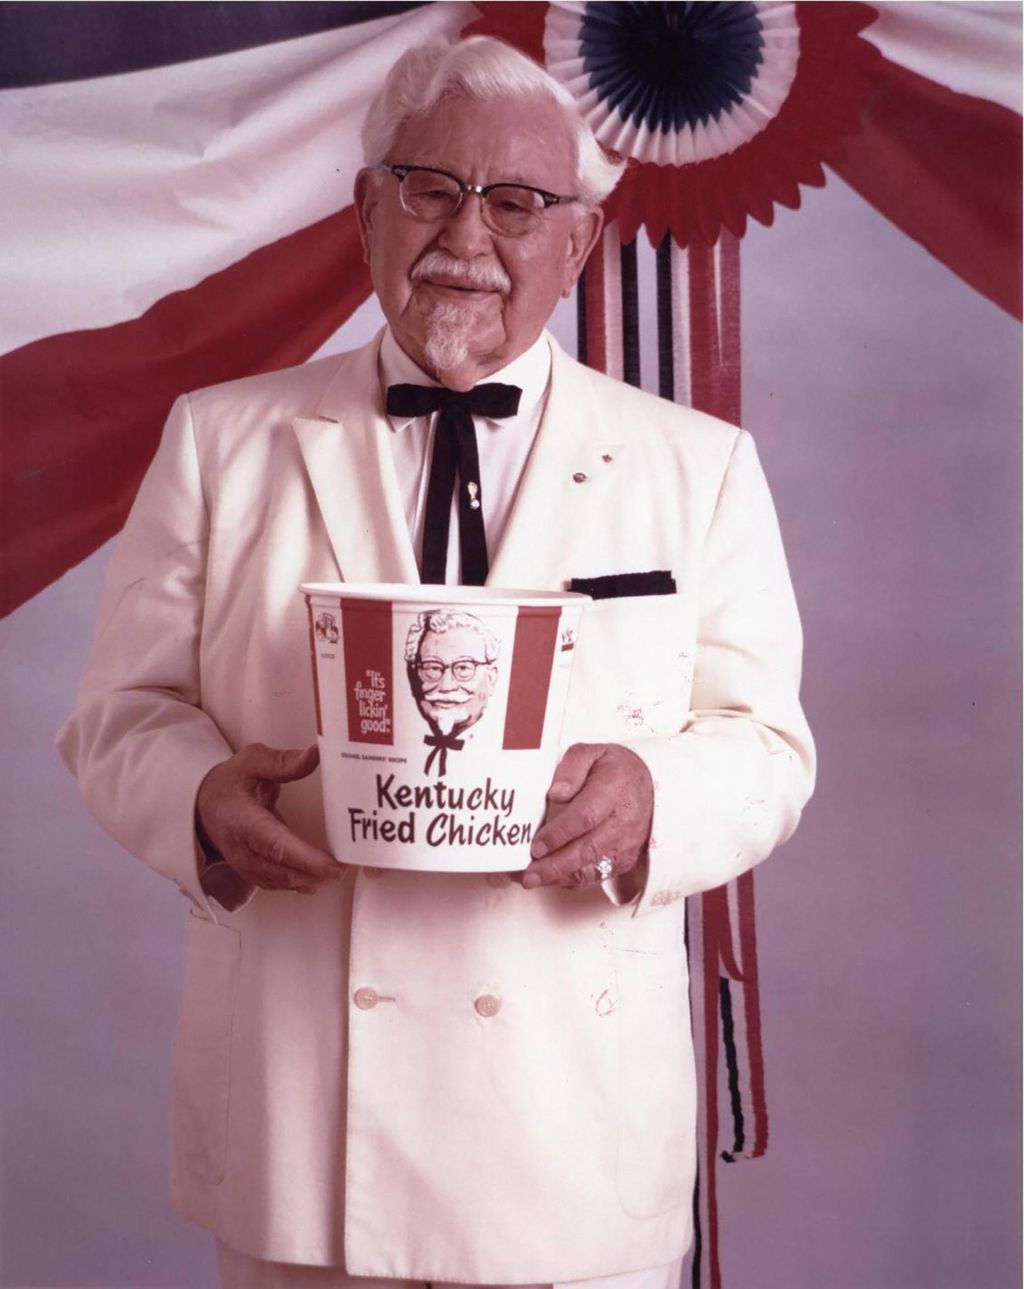 Wow! Restoran Bersejarah Milik Kolonel Sanders KFC Bakal Dijual Rp 135 Miliar